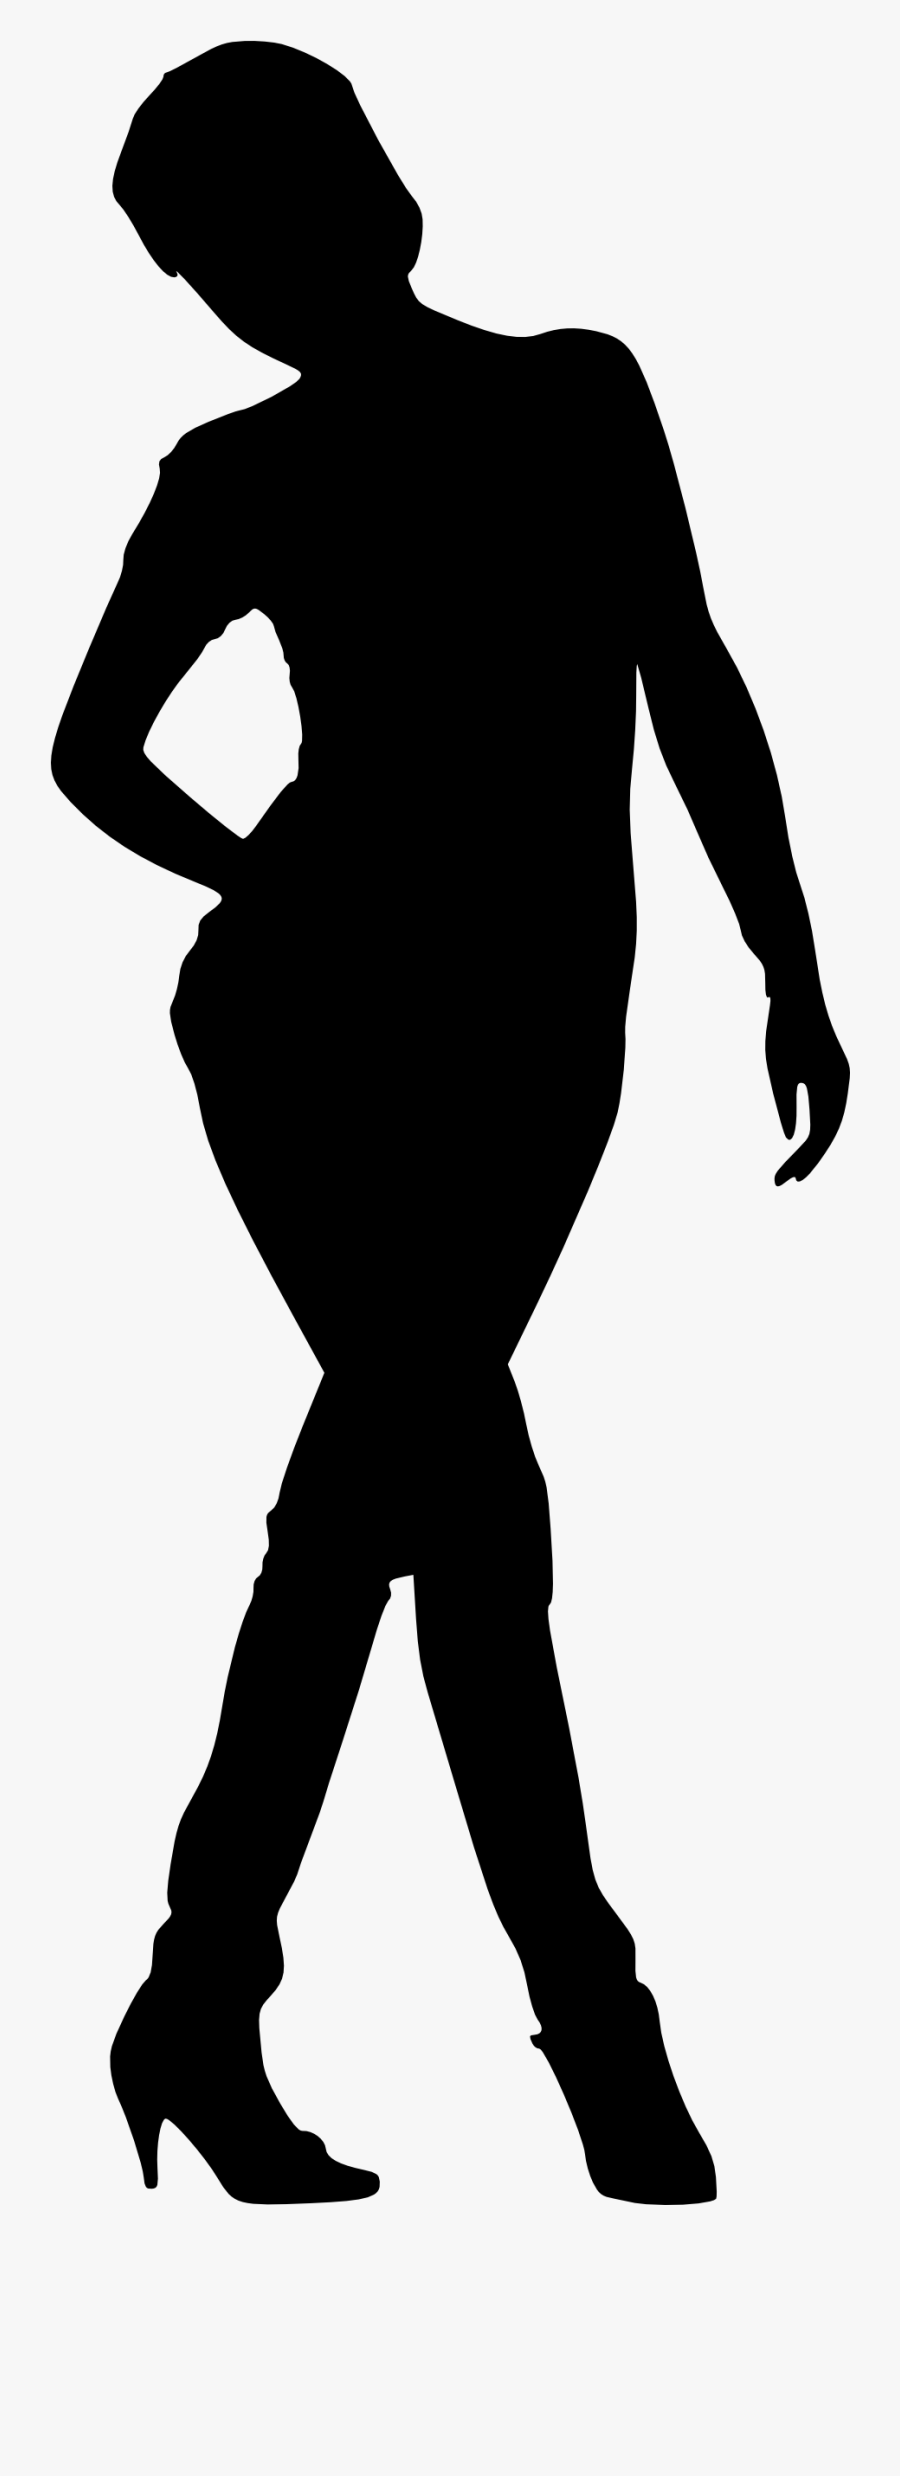 Woman Silhouette - Line Woman Silhouette Transparent, Transparent Clipart